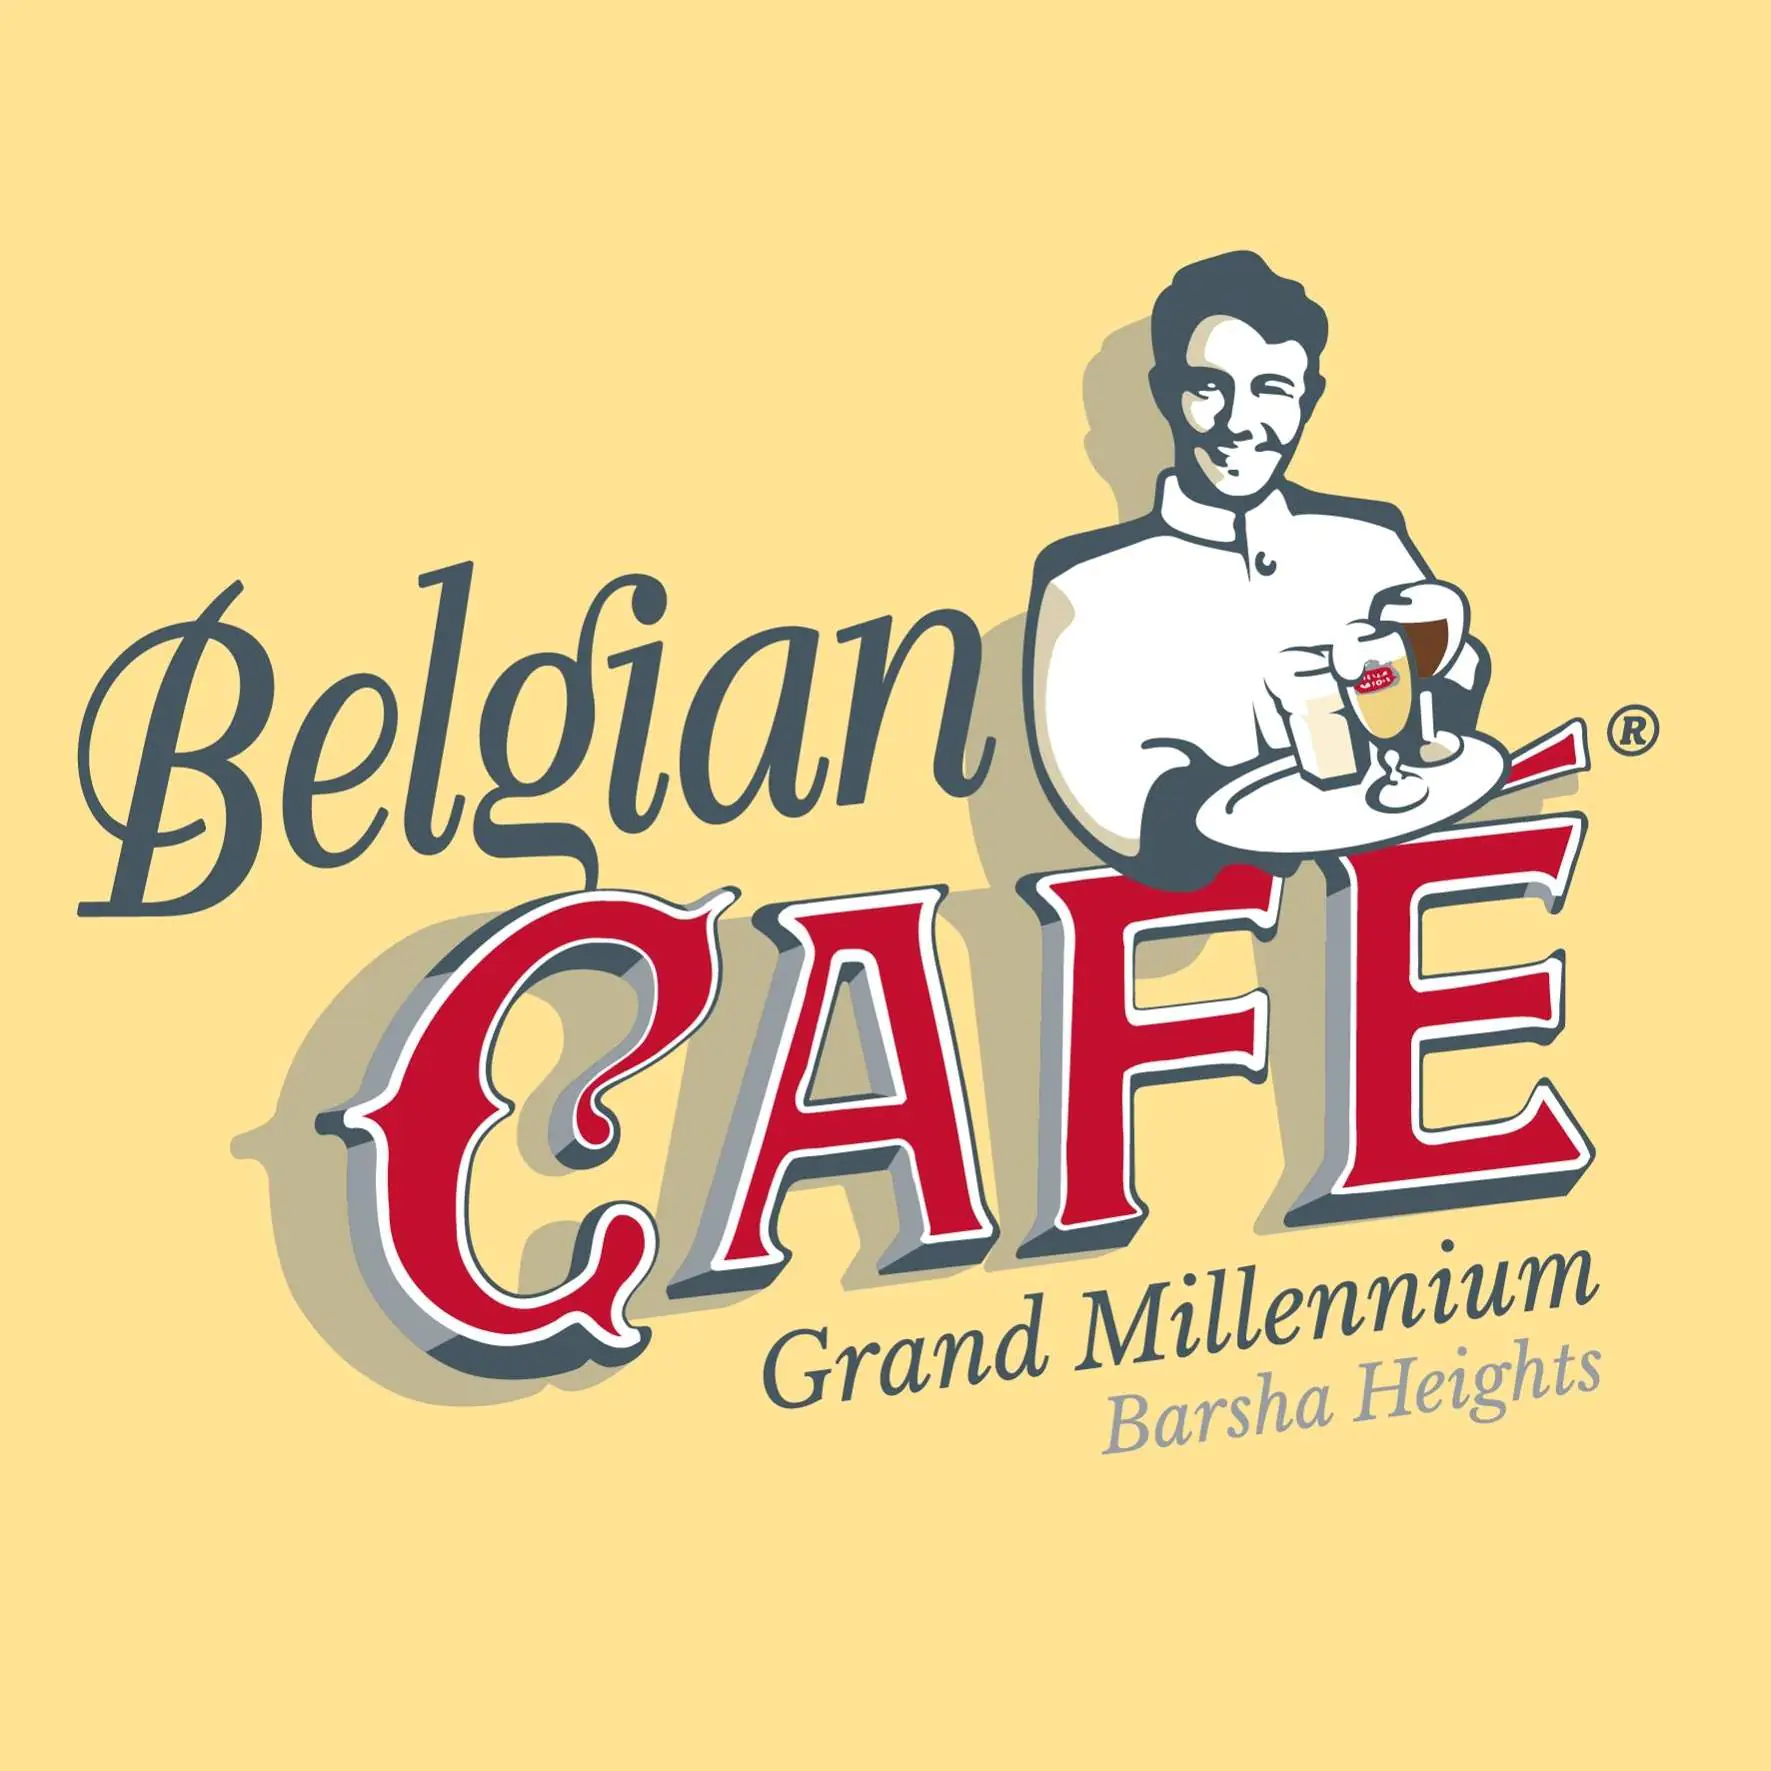 Belgian Café, Barsha Heights in Barsha Heights (TECOM)